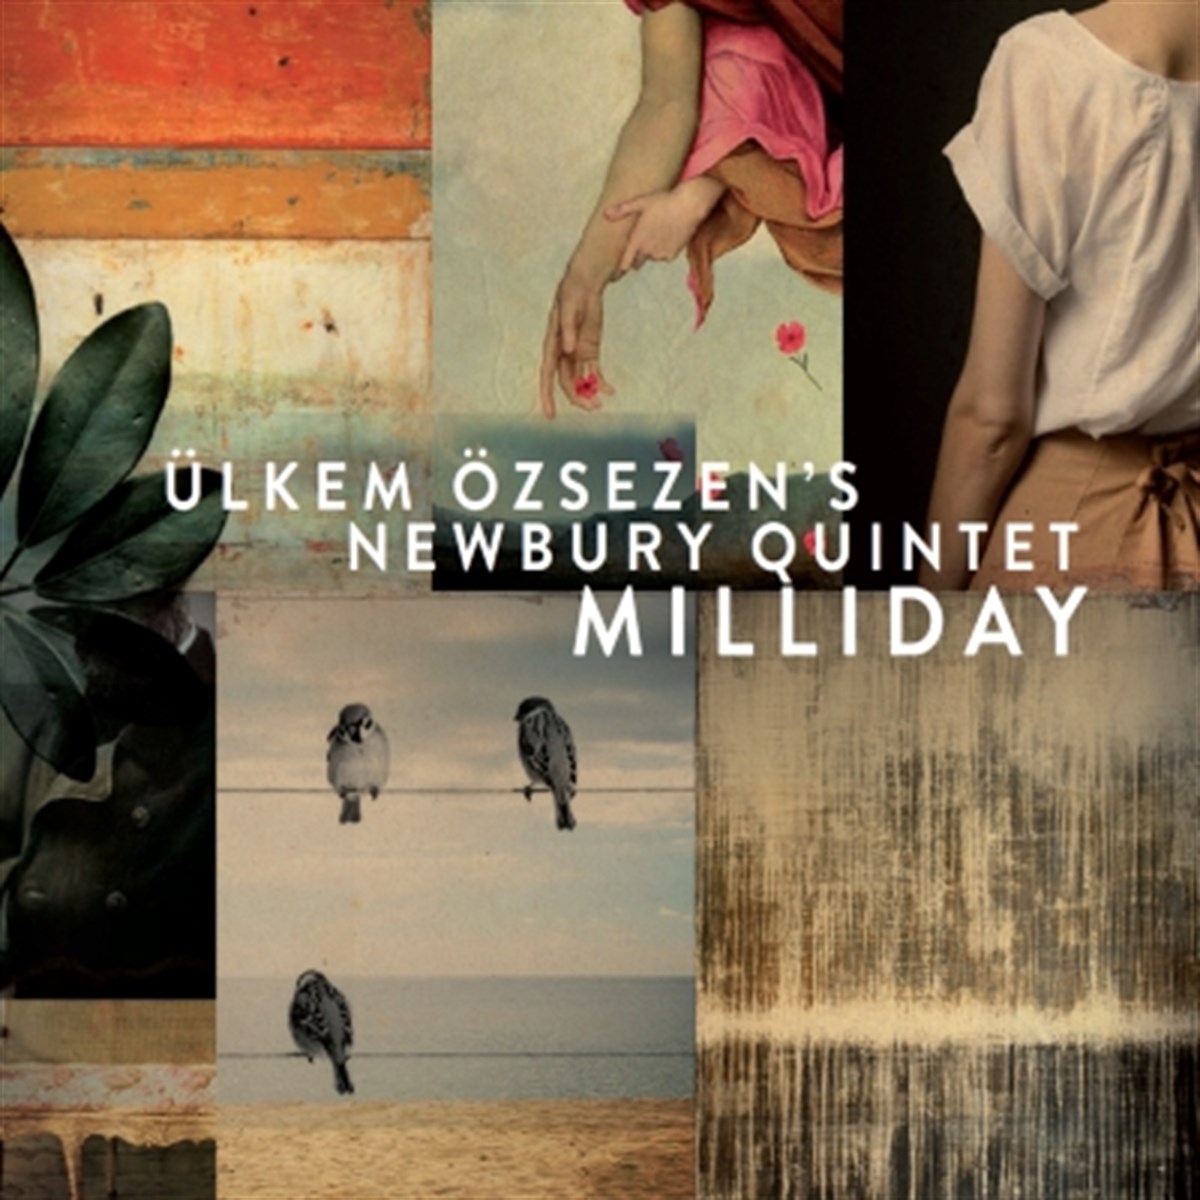 Ülkem Özsezen's Newbury Quintet Milliday